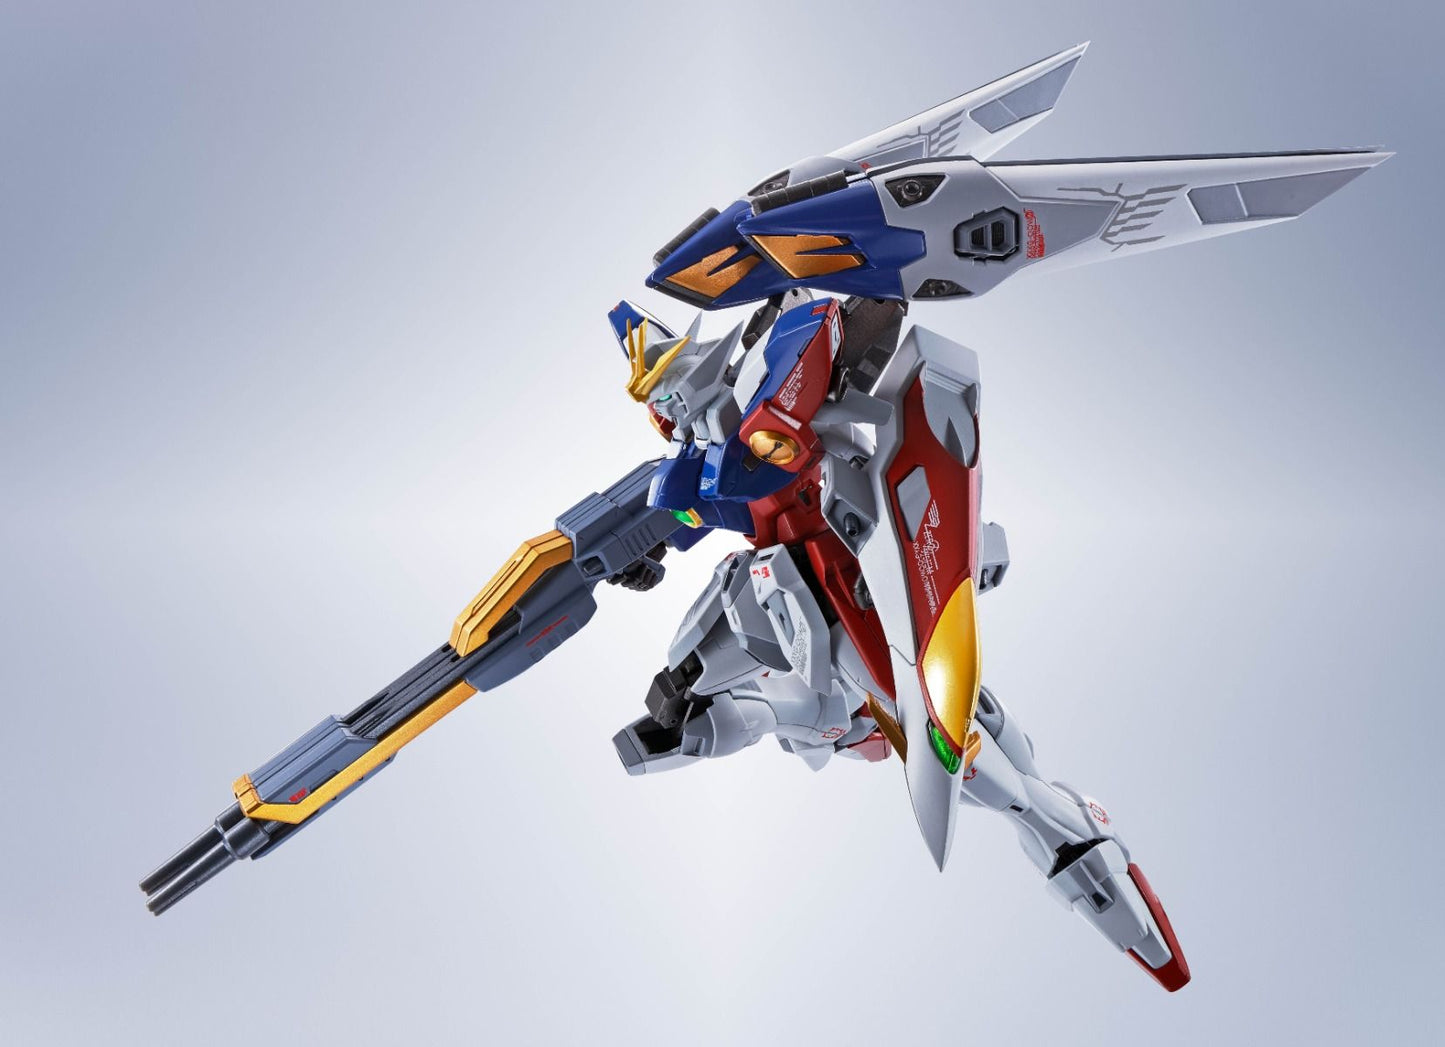 Metal Robot Spirits Wing Gundam Zero <Side MS> Figure